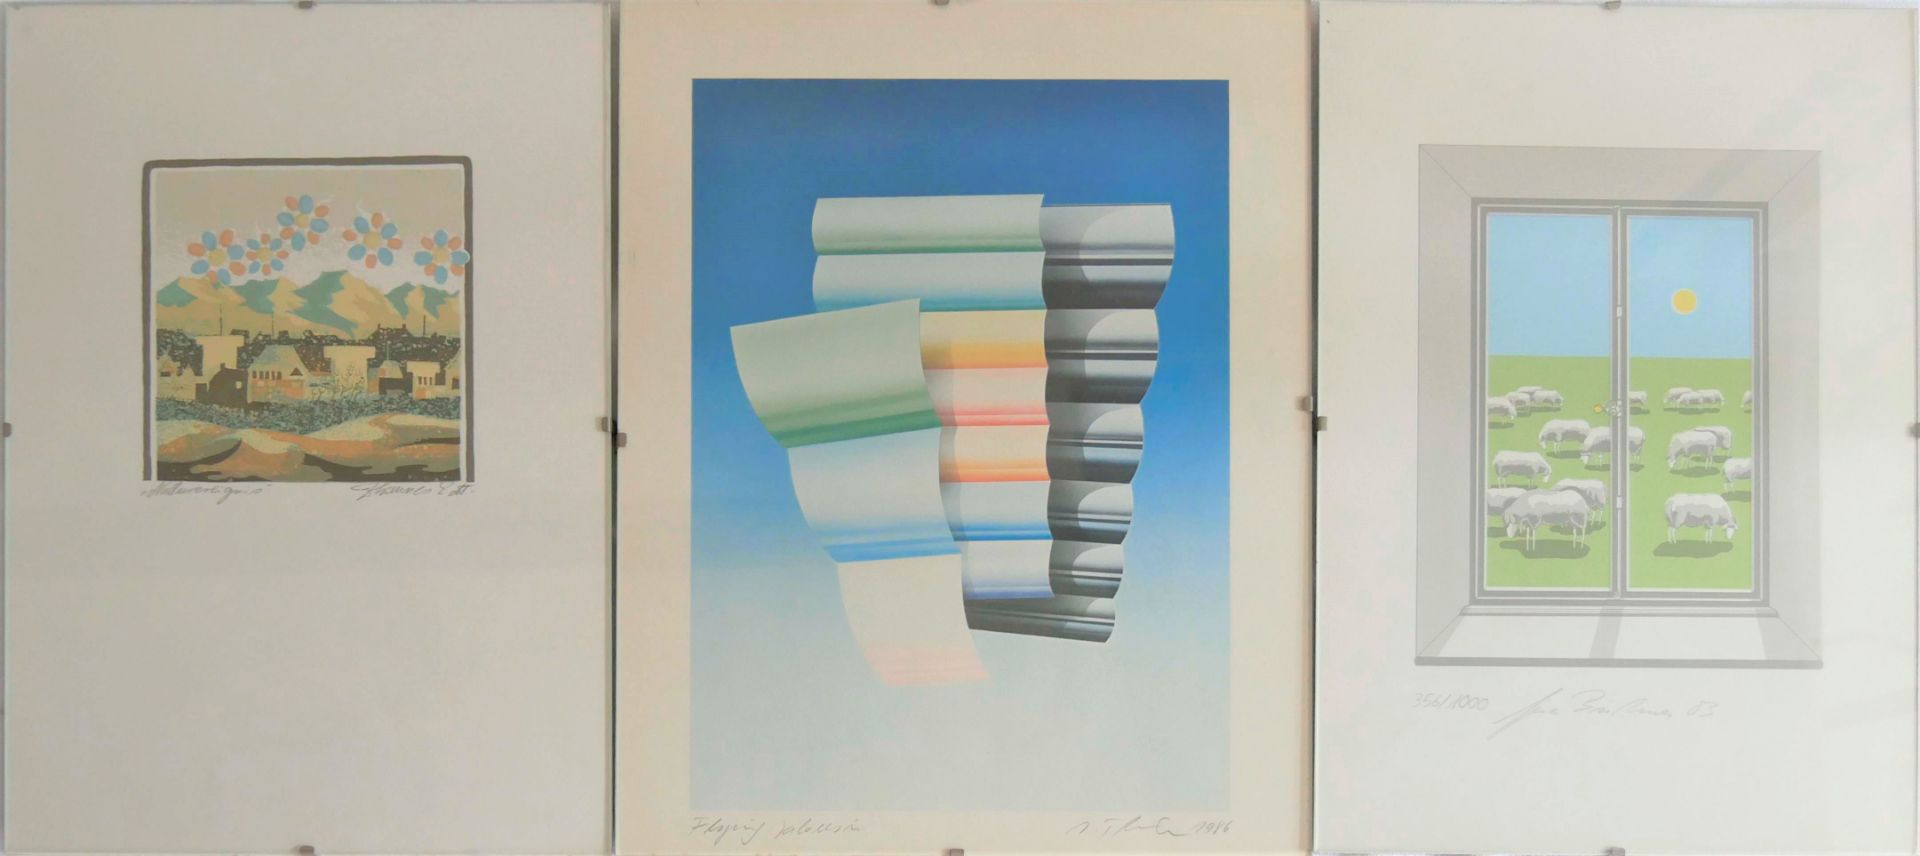 3 Grafiken im Glasrahmen, dabei: 1. "Flying Jalousie" 1986, von Jürgen Thiele, Signatur unten